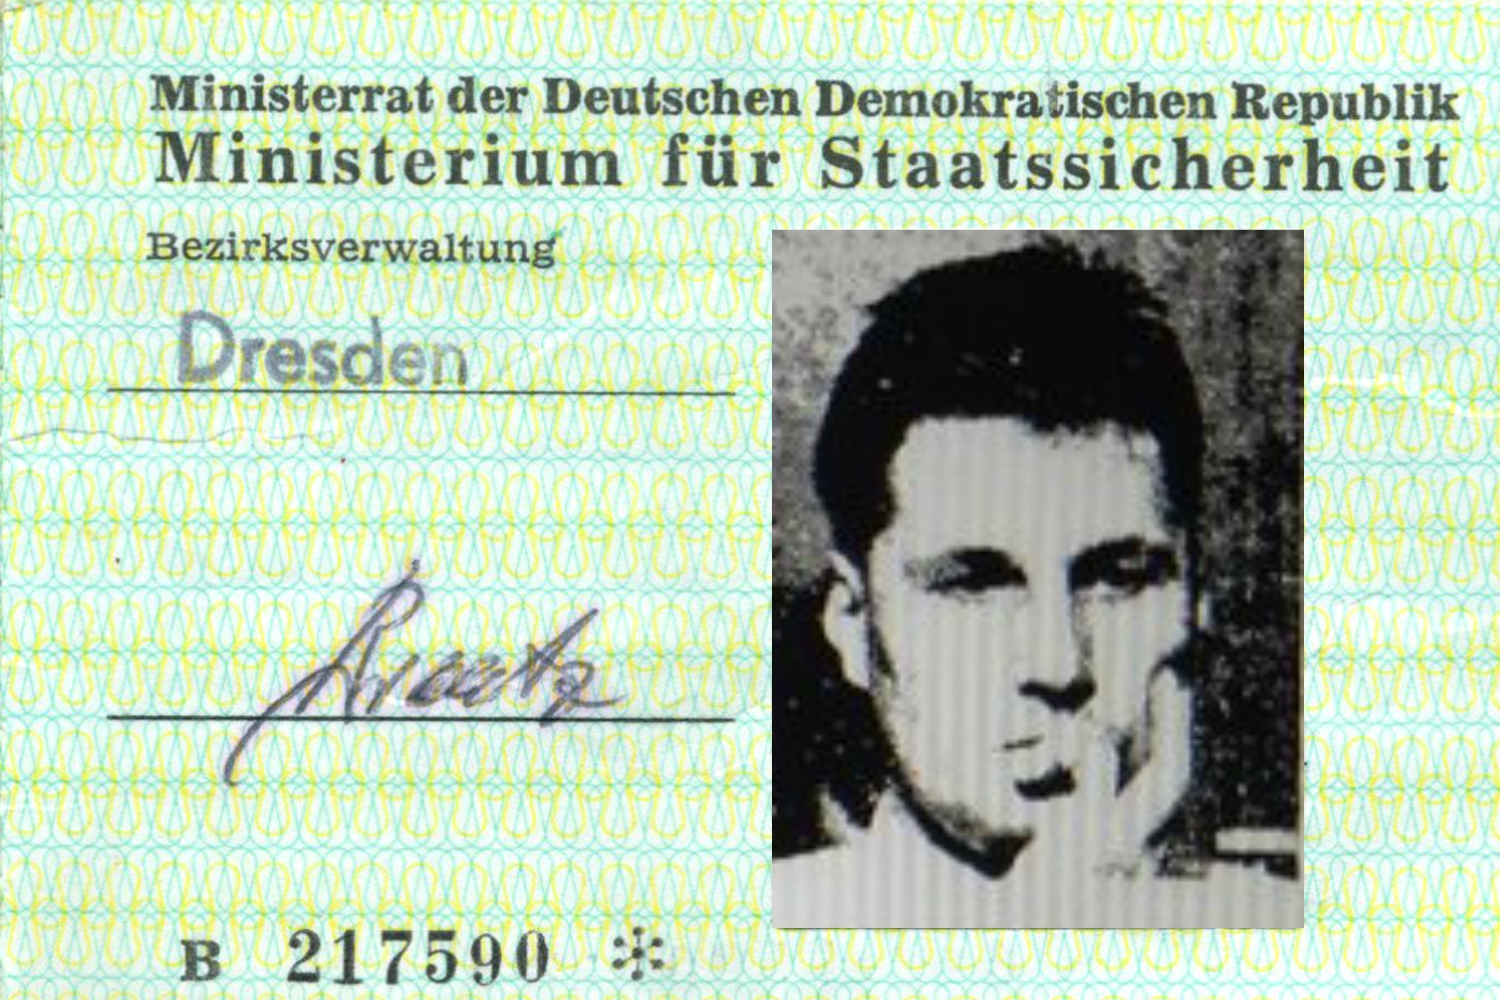 Afera Požar- Razkrivamo najbolj temačno skrivnost Bojana Požarja, ki ga Furs preiskuje zaradi dviga 500.000 evrov z njegovih podjetij – Bojana Požarja je slovenska partija poslala na “Schnellkurs” v zloglasno vzhodnonemško tajno službo Stasi